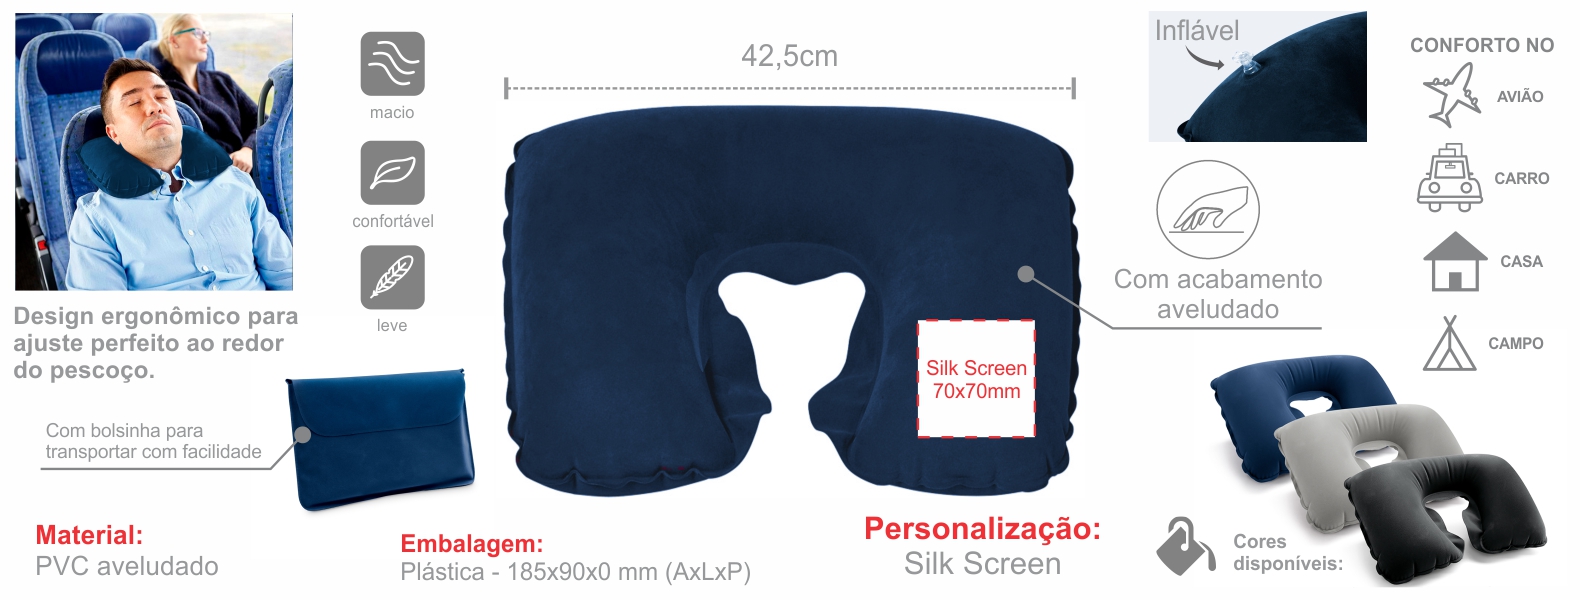 Almofada de pescoço inflável em PVC azul. Conta com acabamento aveludado e bolsa.